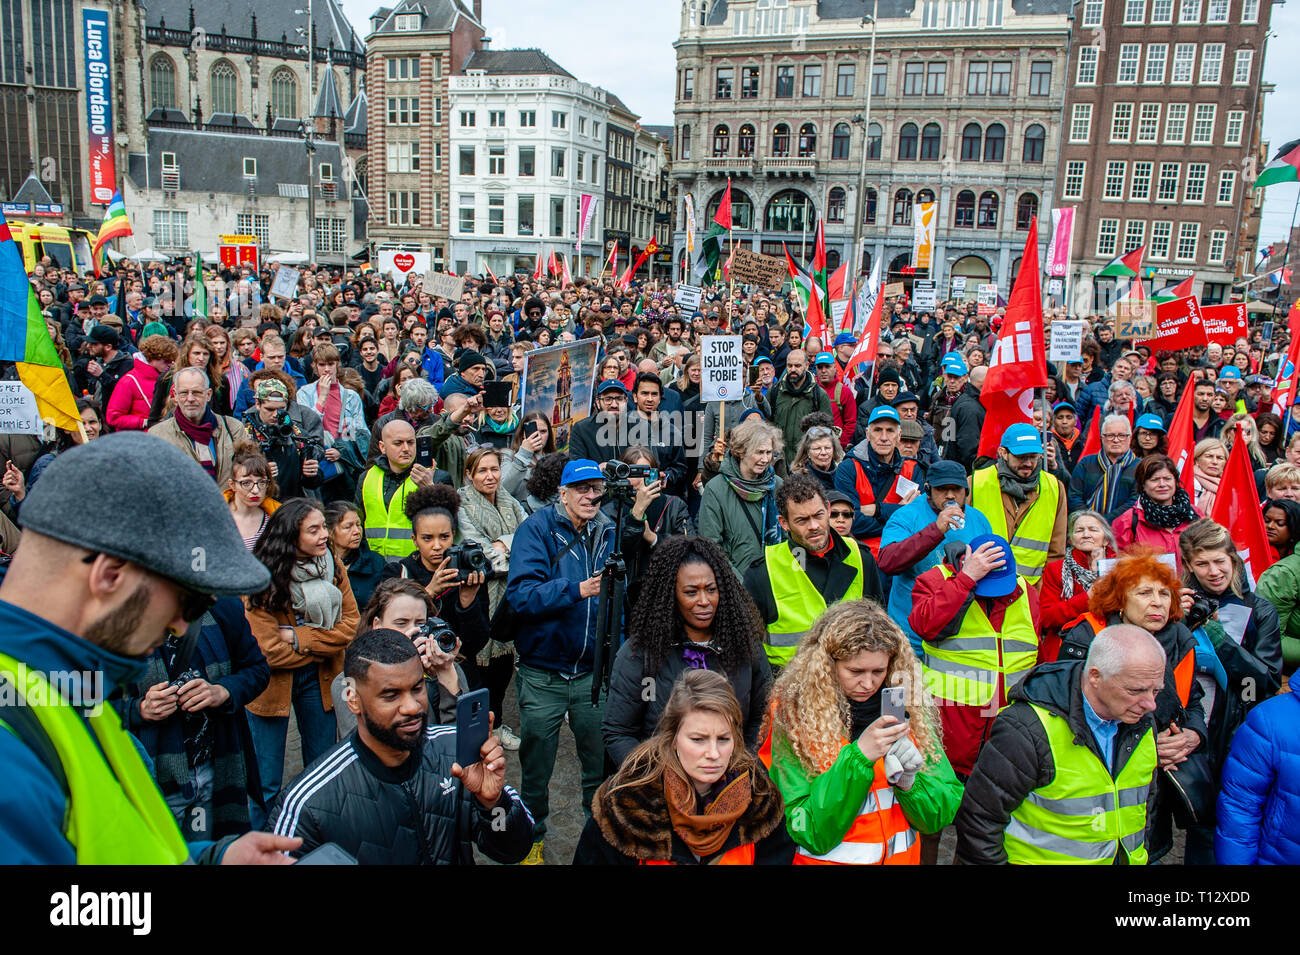 Eine Masse von Leuten gesehen zu hören Reden an der Dam Platz während der Demonstration. Tausende von Menschen an den Dam Platz im Zentrum von Amsterdam versammelt, um gegen Rassismus und Diskriminierung zu demonstrieren. Sie bitten um Vielfalt und Solidarität, gegen alle Formen von Rassismus und Diskriminierung. Auch gegen die beiden politischen Parteien der extremen Rechten in den Niederlanden, die Pvv und der FvD, die ihre Macht während der letzten Wahlen im Land zugenommen haben. Eine kleine rechtsextreme Gruppe zeigte sich während der Wanderung zwei große Plakate und Schreien bei den Demonstranten. Stockfoto